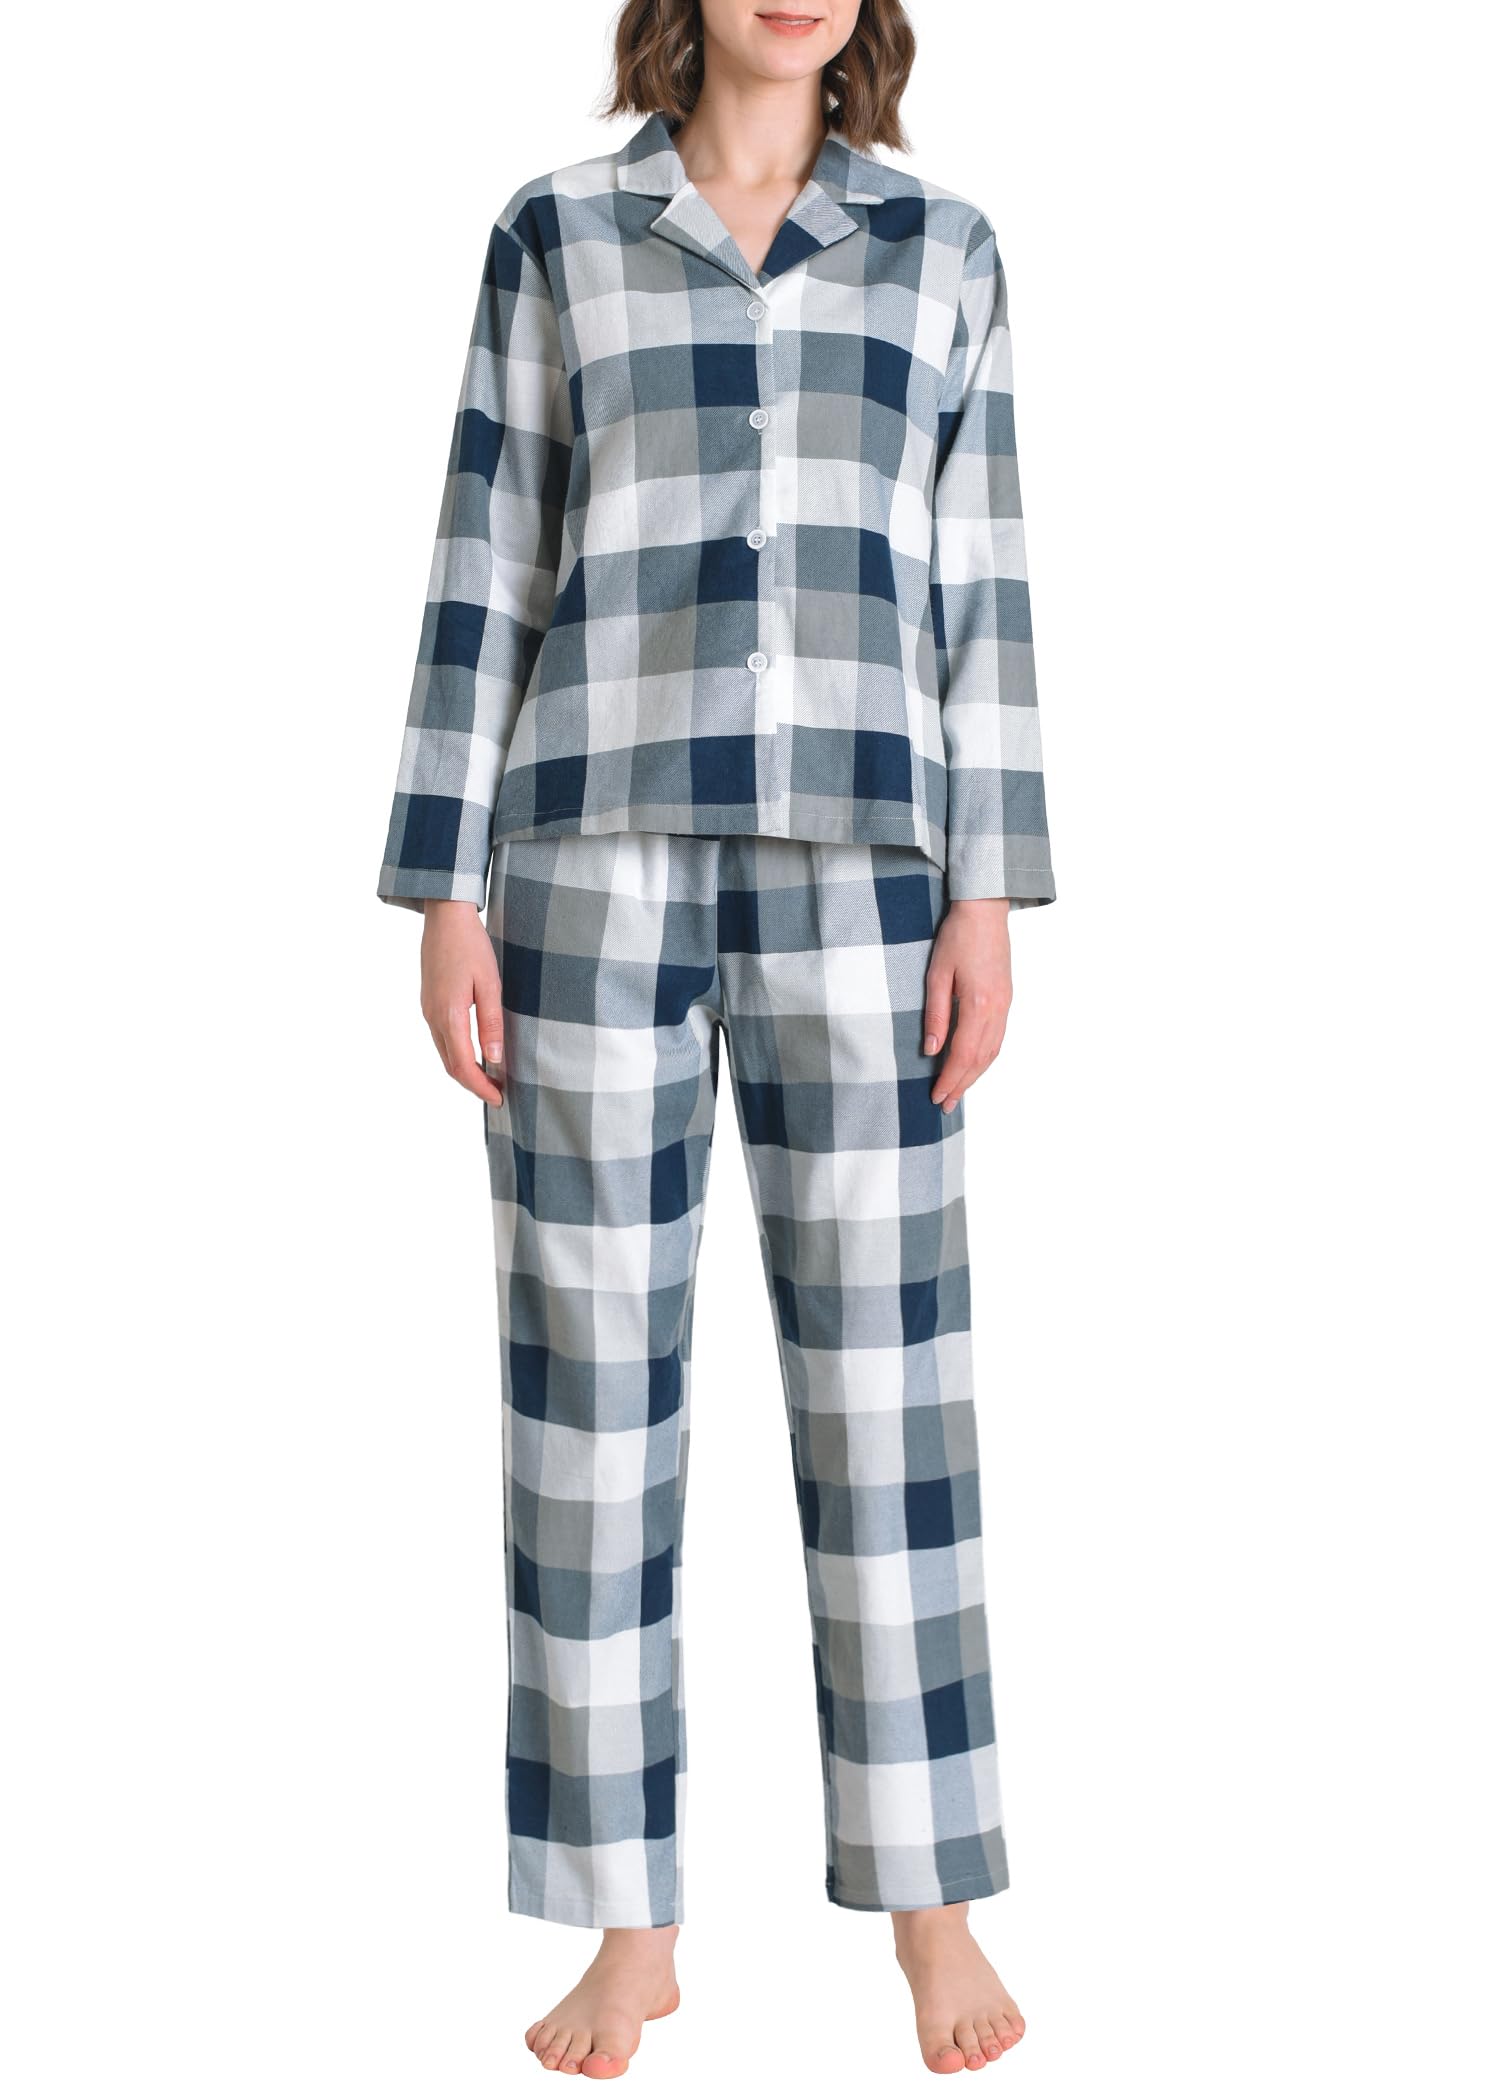 Women's Petite Flannel Pajama Set Soft Cotton Button Up PJs Set